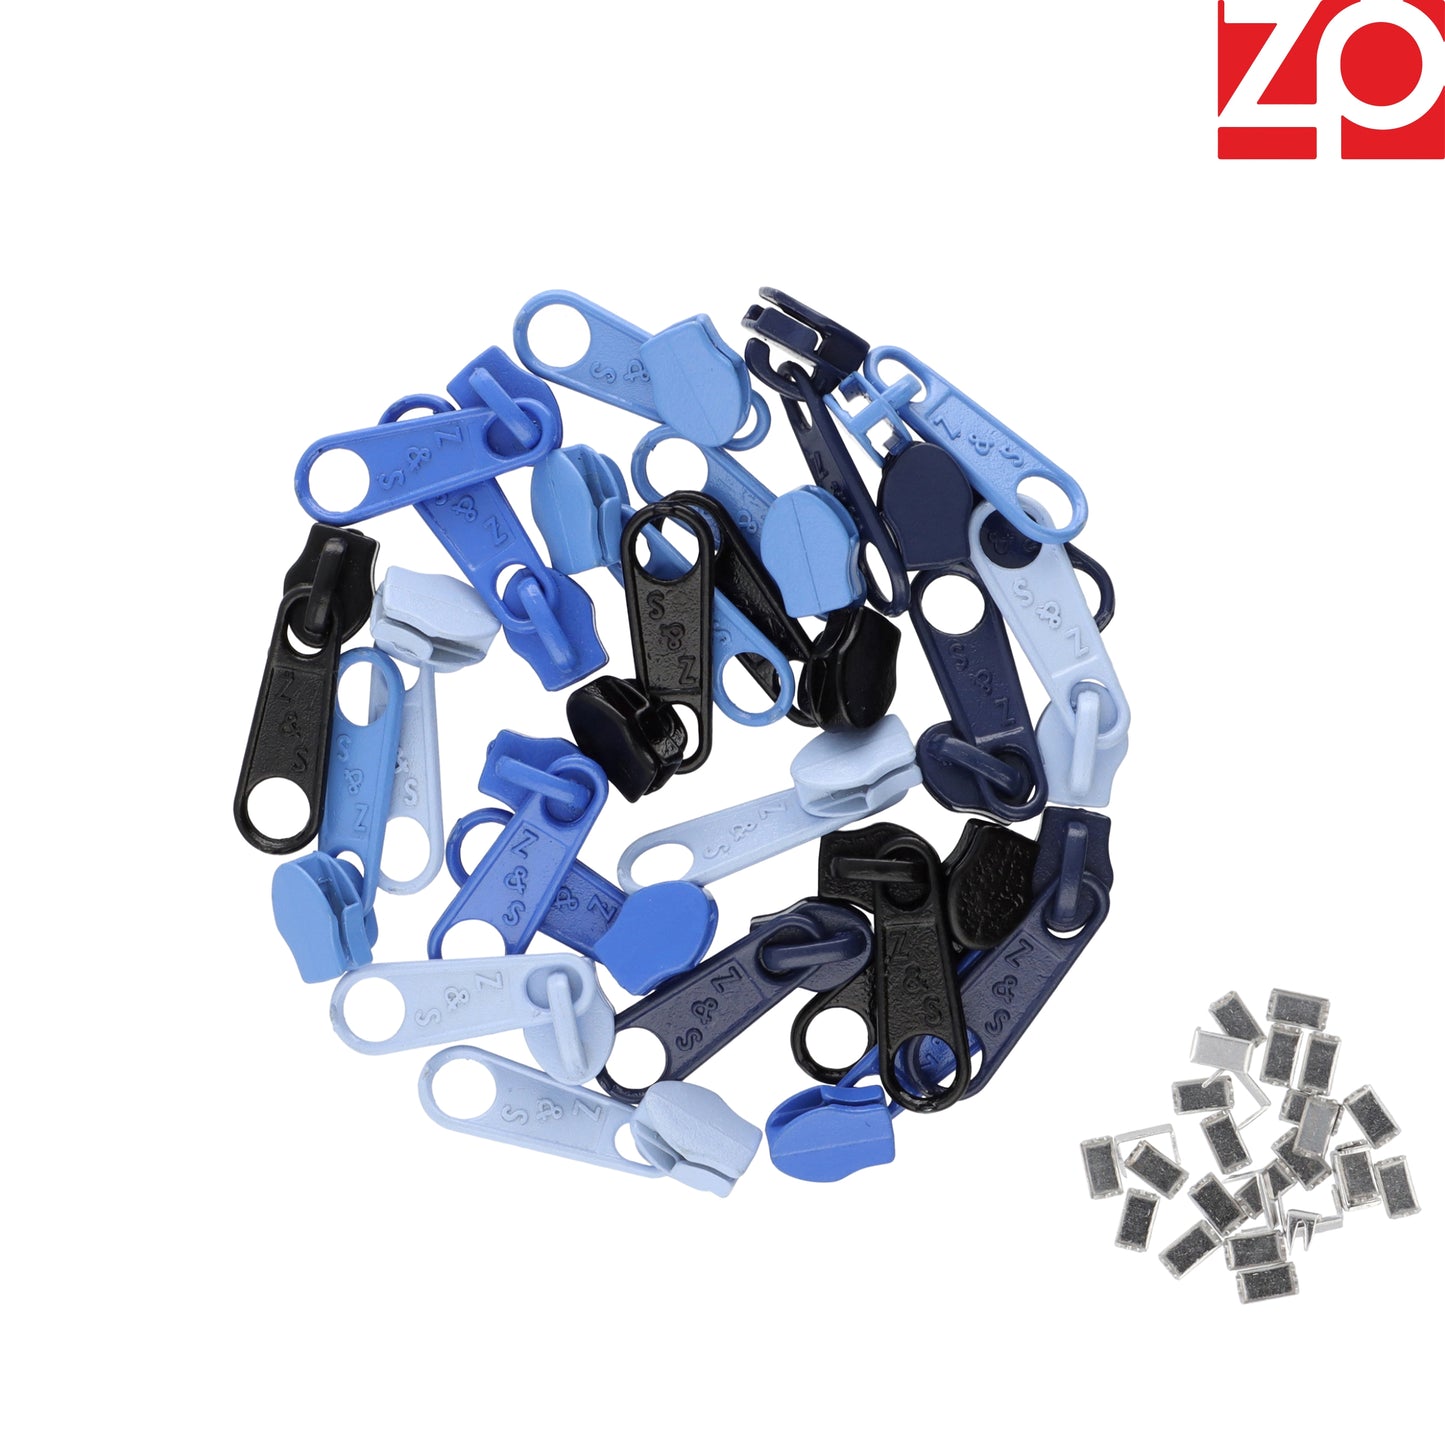 ZIPP AND SLIDE - Endlos Reißverschluss Set mit Zipper 3mm 12,5 Meter - nickelfrei - Farbsetnr. 5 Das Original